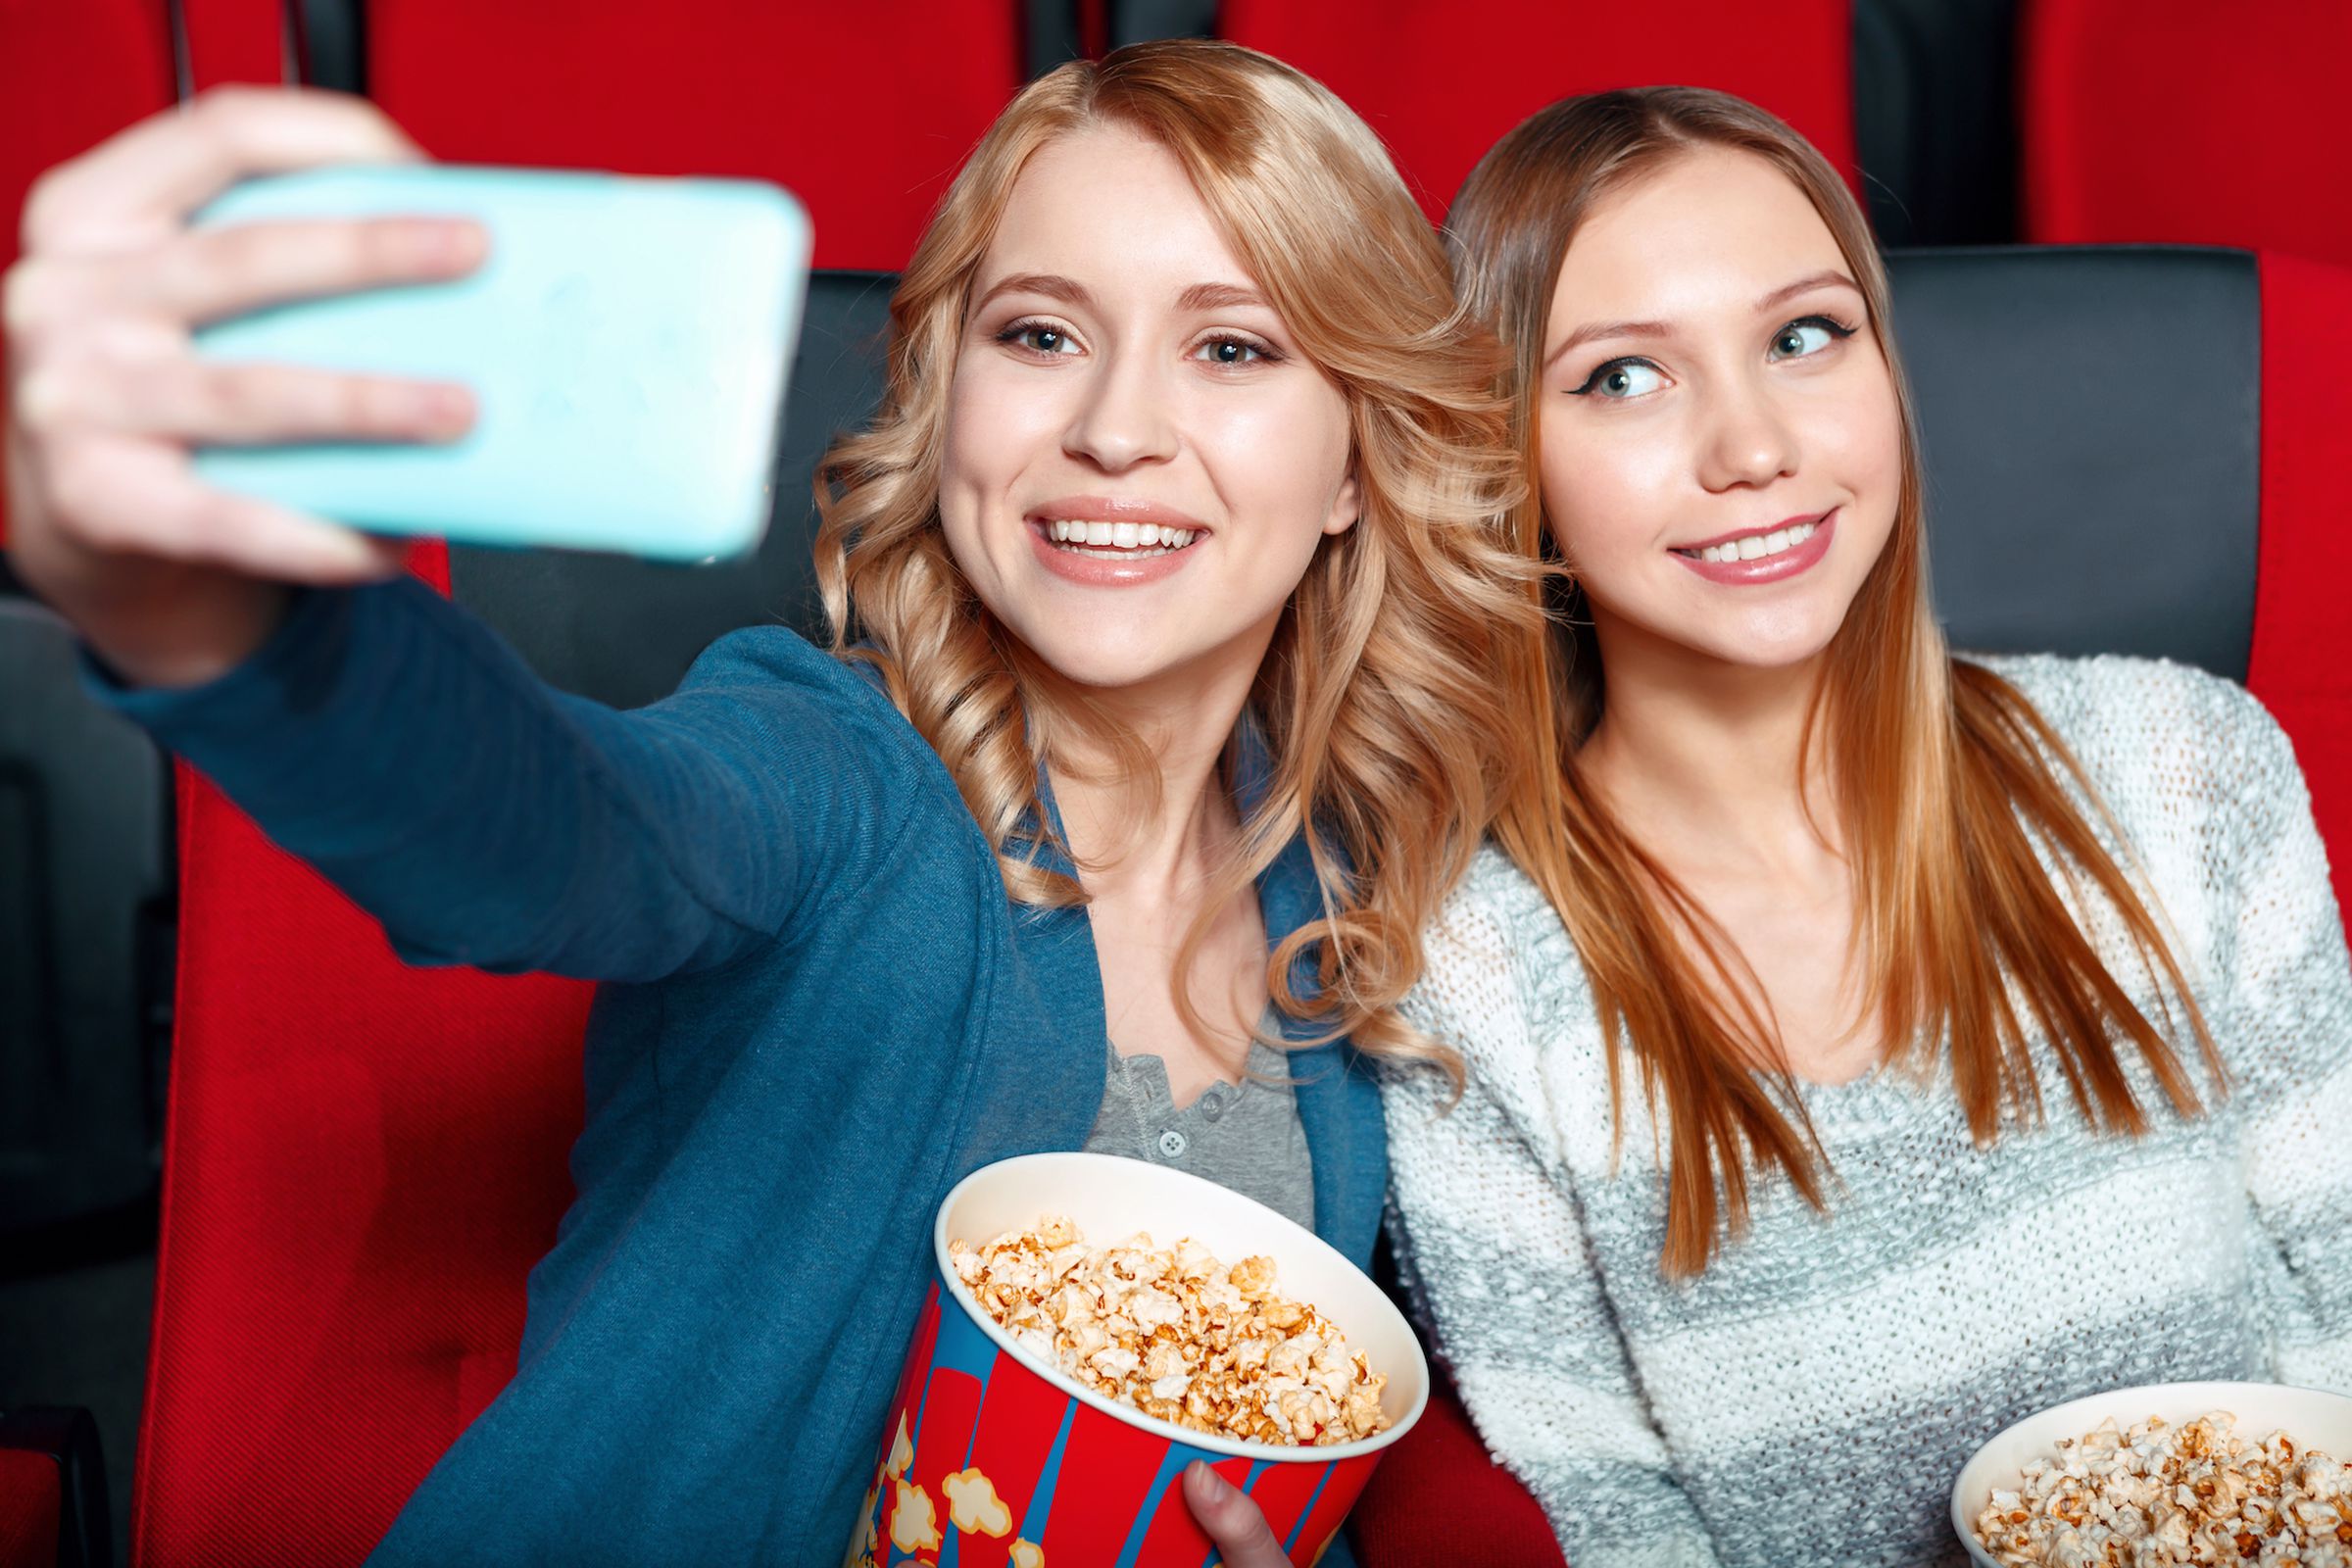 cinema selfie (Dmytro Zinkevych / Shutterstock)